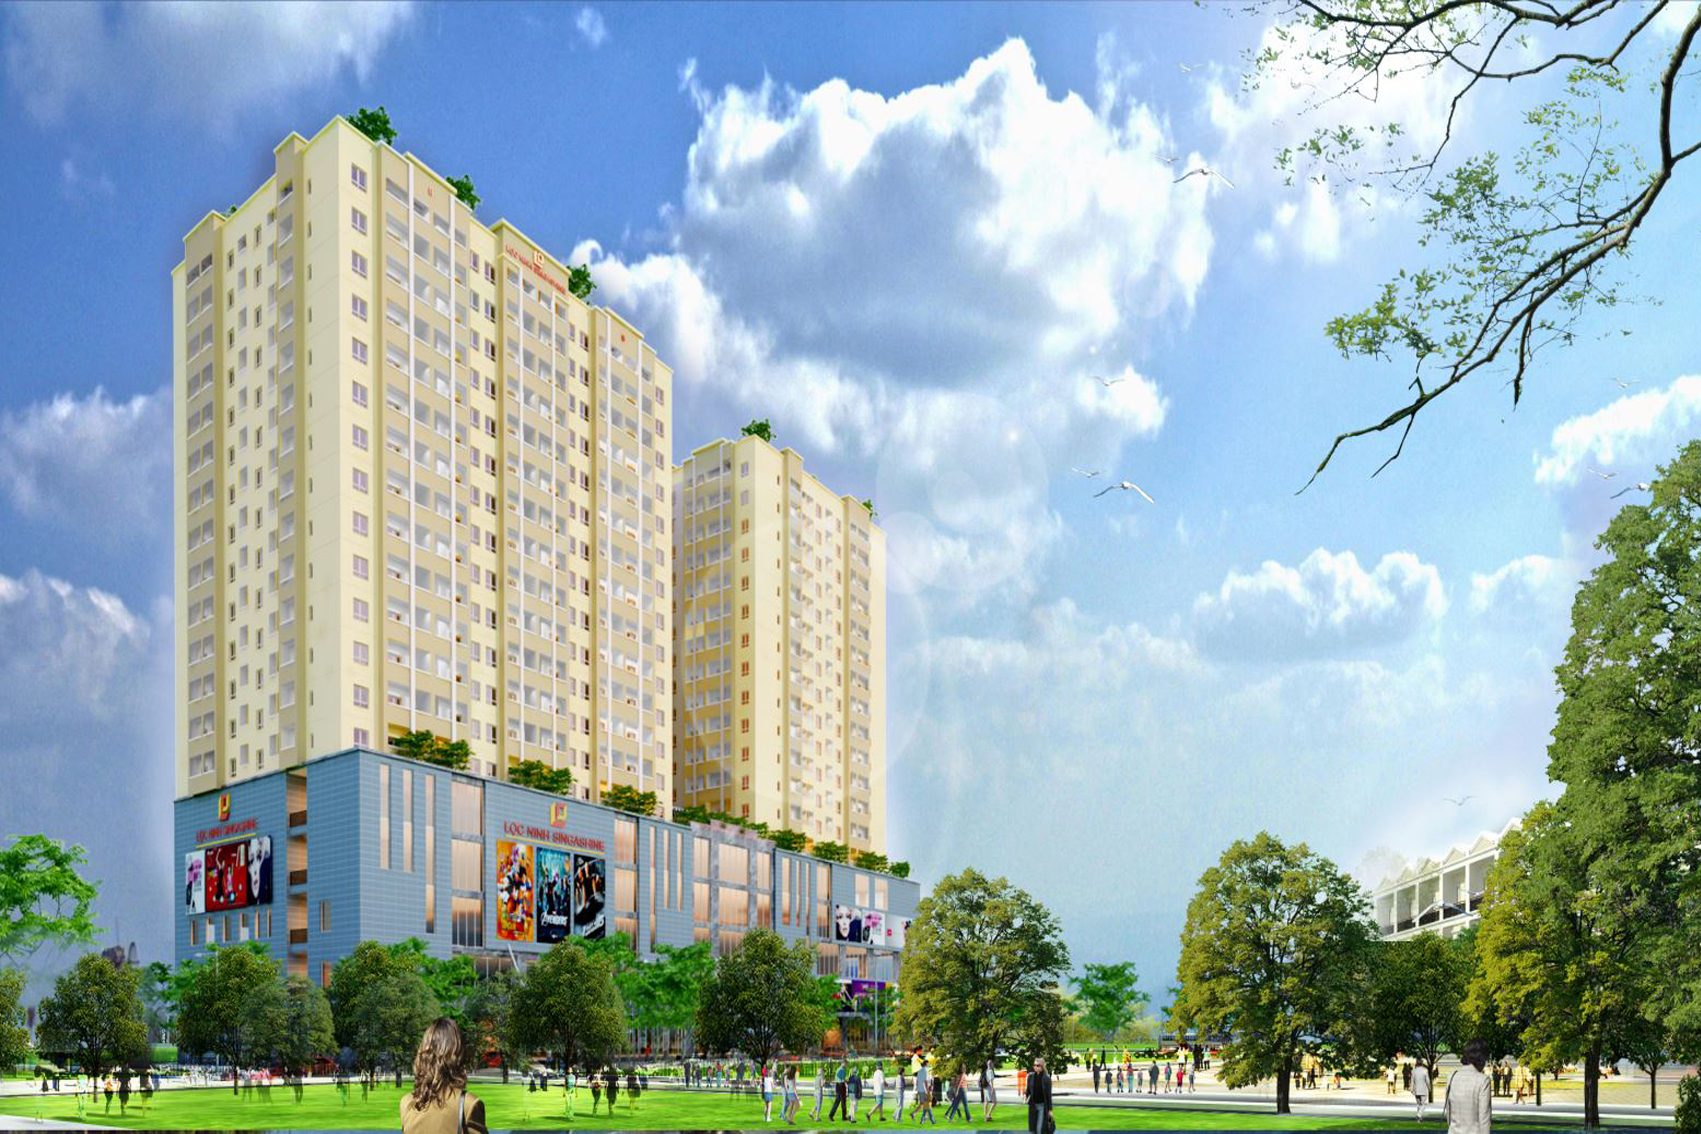 Dự án: tòa nhà Lộc Ninh Singashine